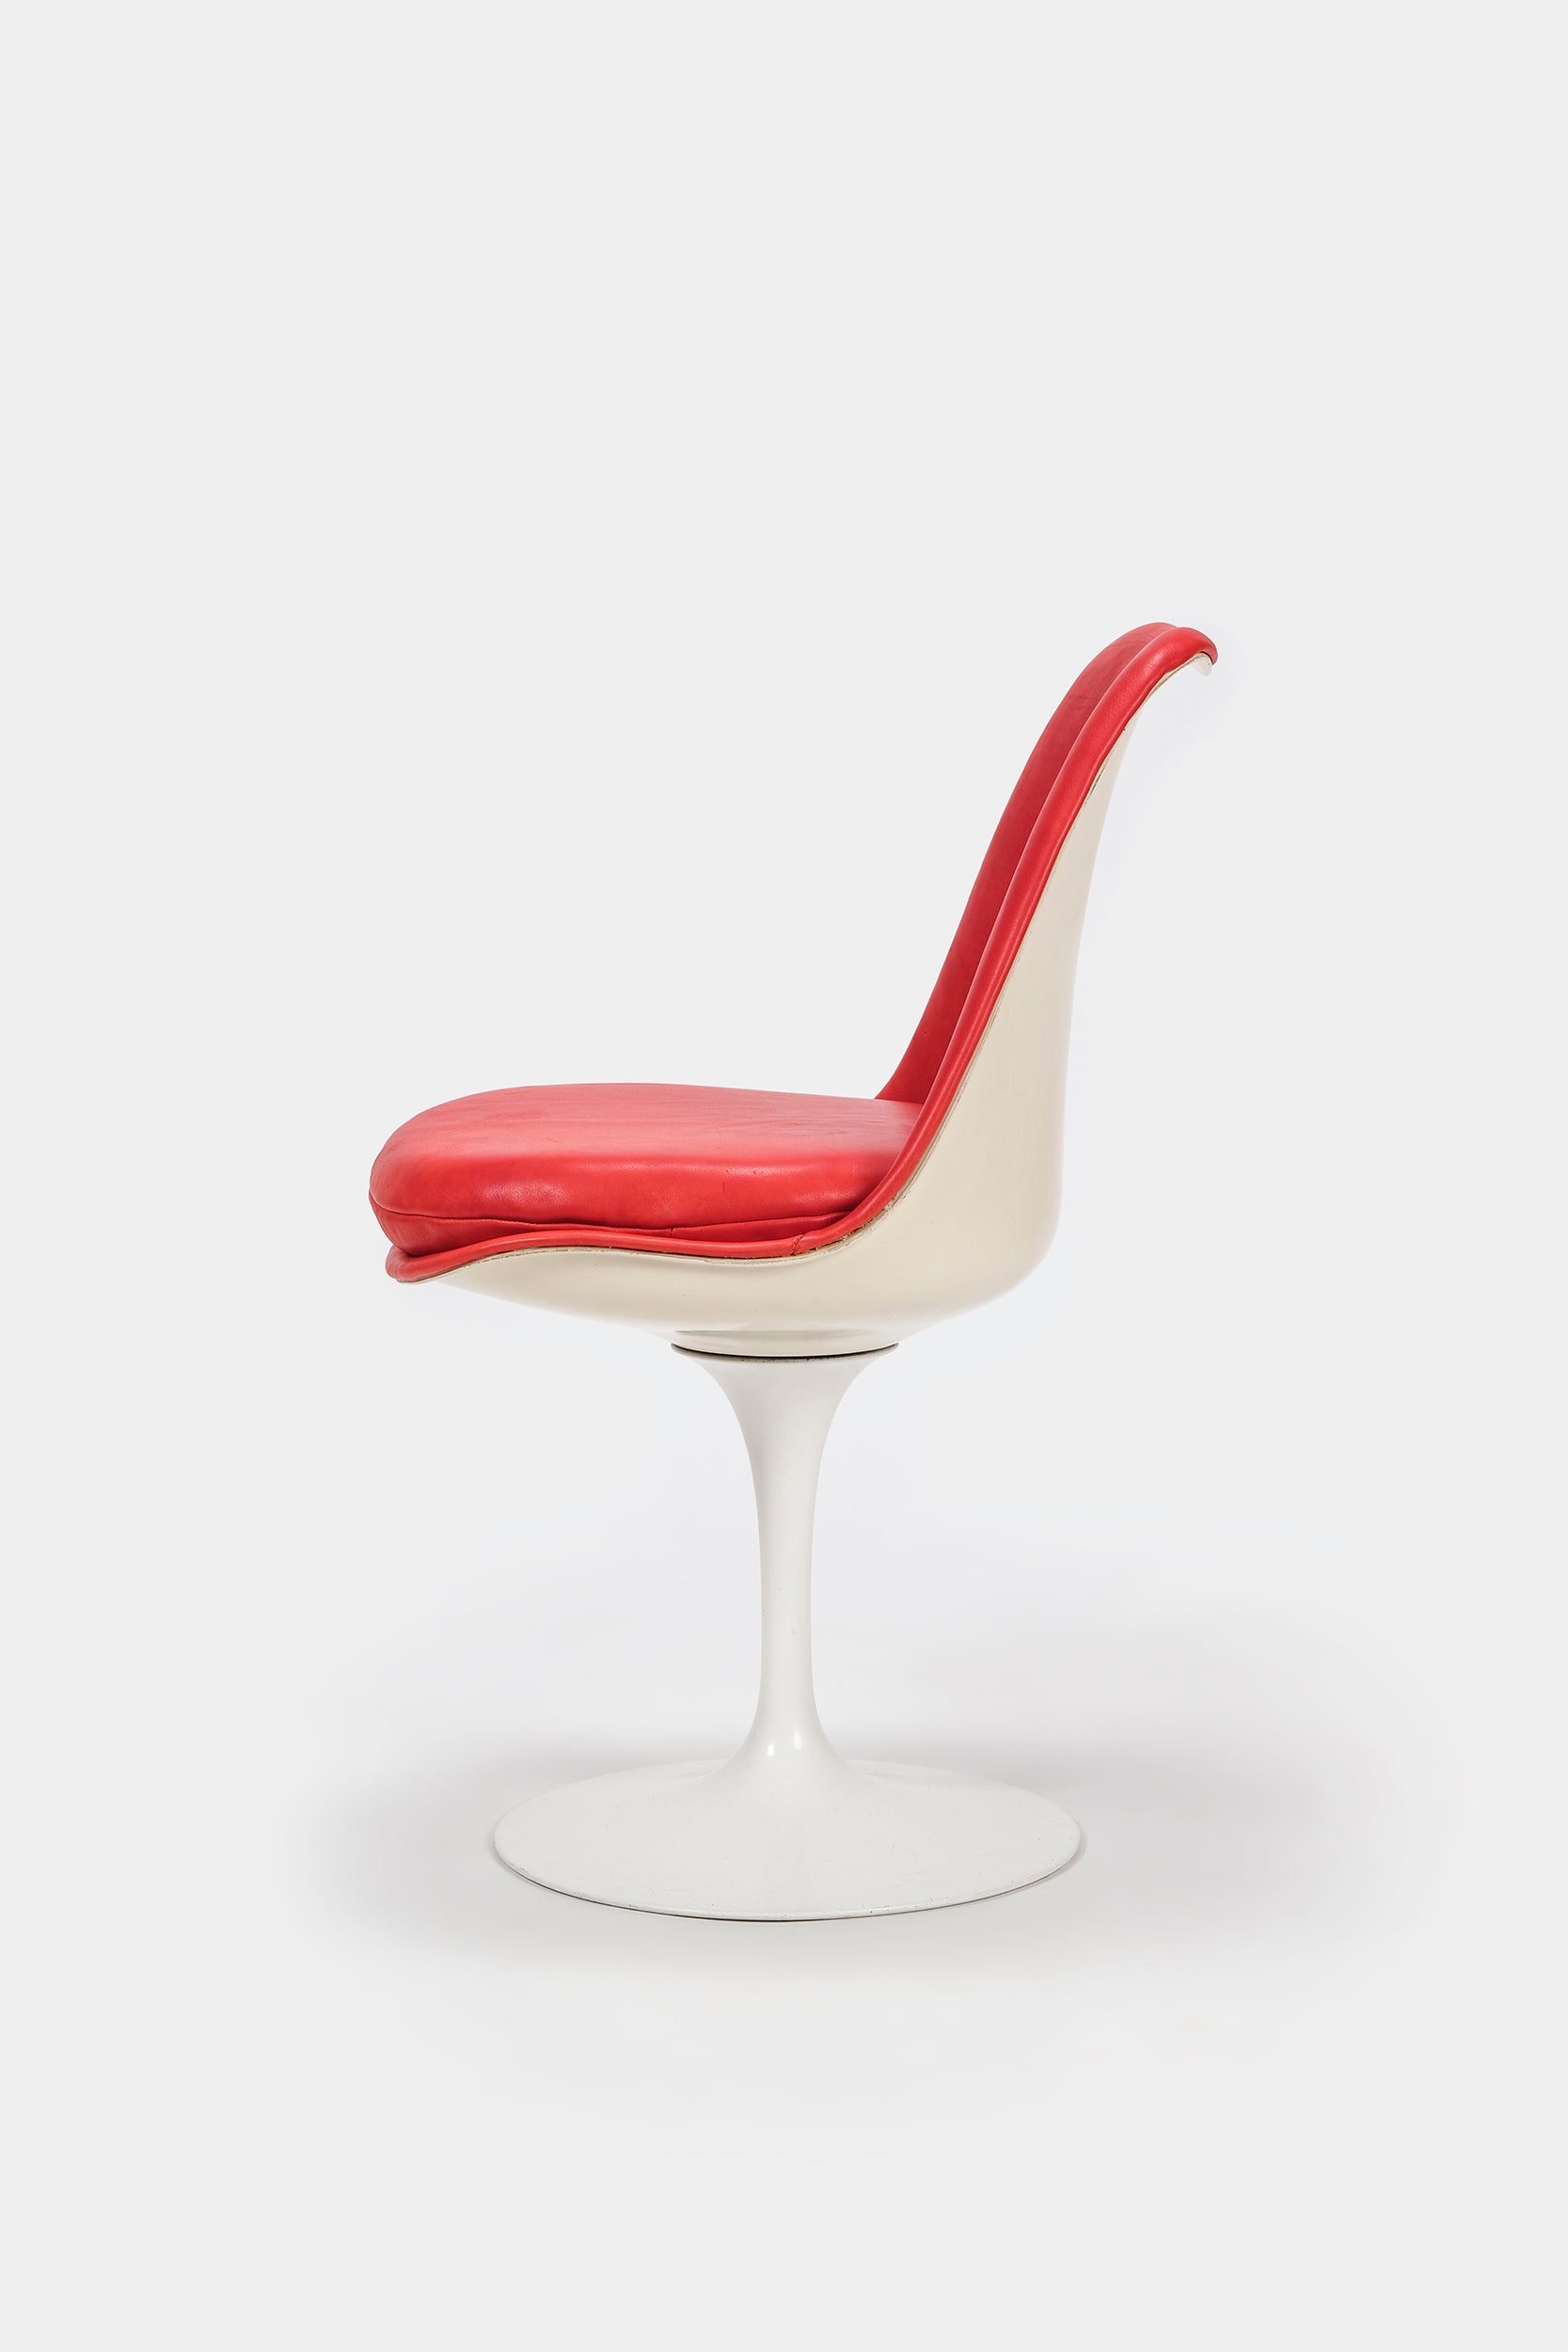 Eero Saarinen, Tulip Chair Model No. 151, Rotatable, Knoll International, 1956